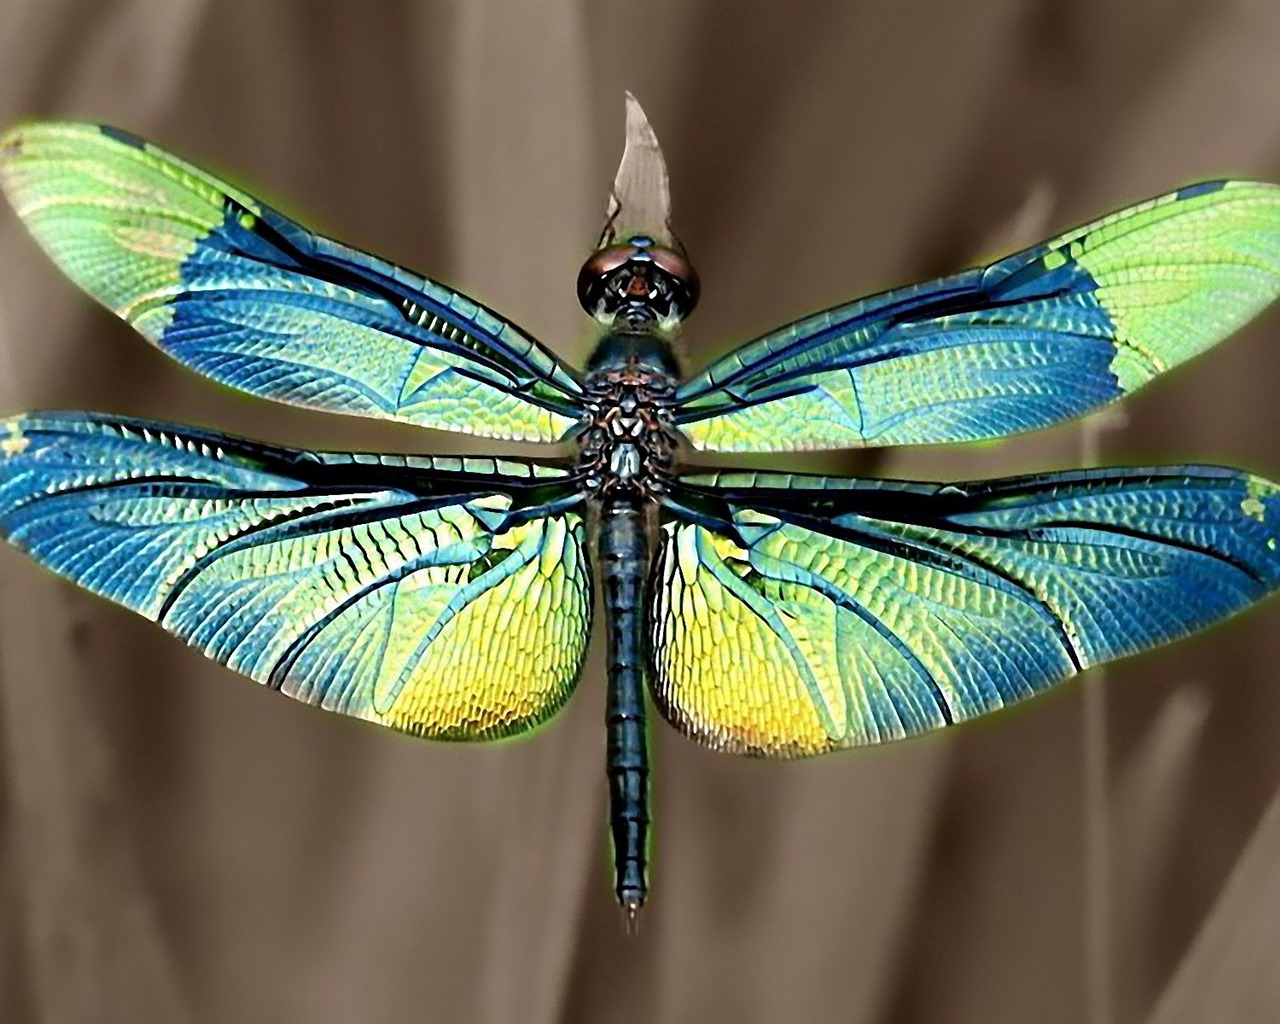 Insecte close-up, fonds d'écran HD libellule #35 - 1280x1024